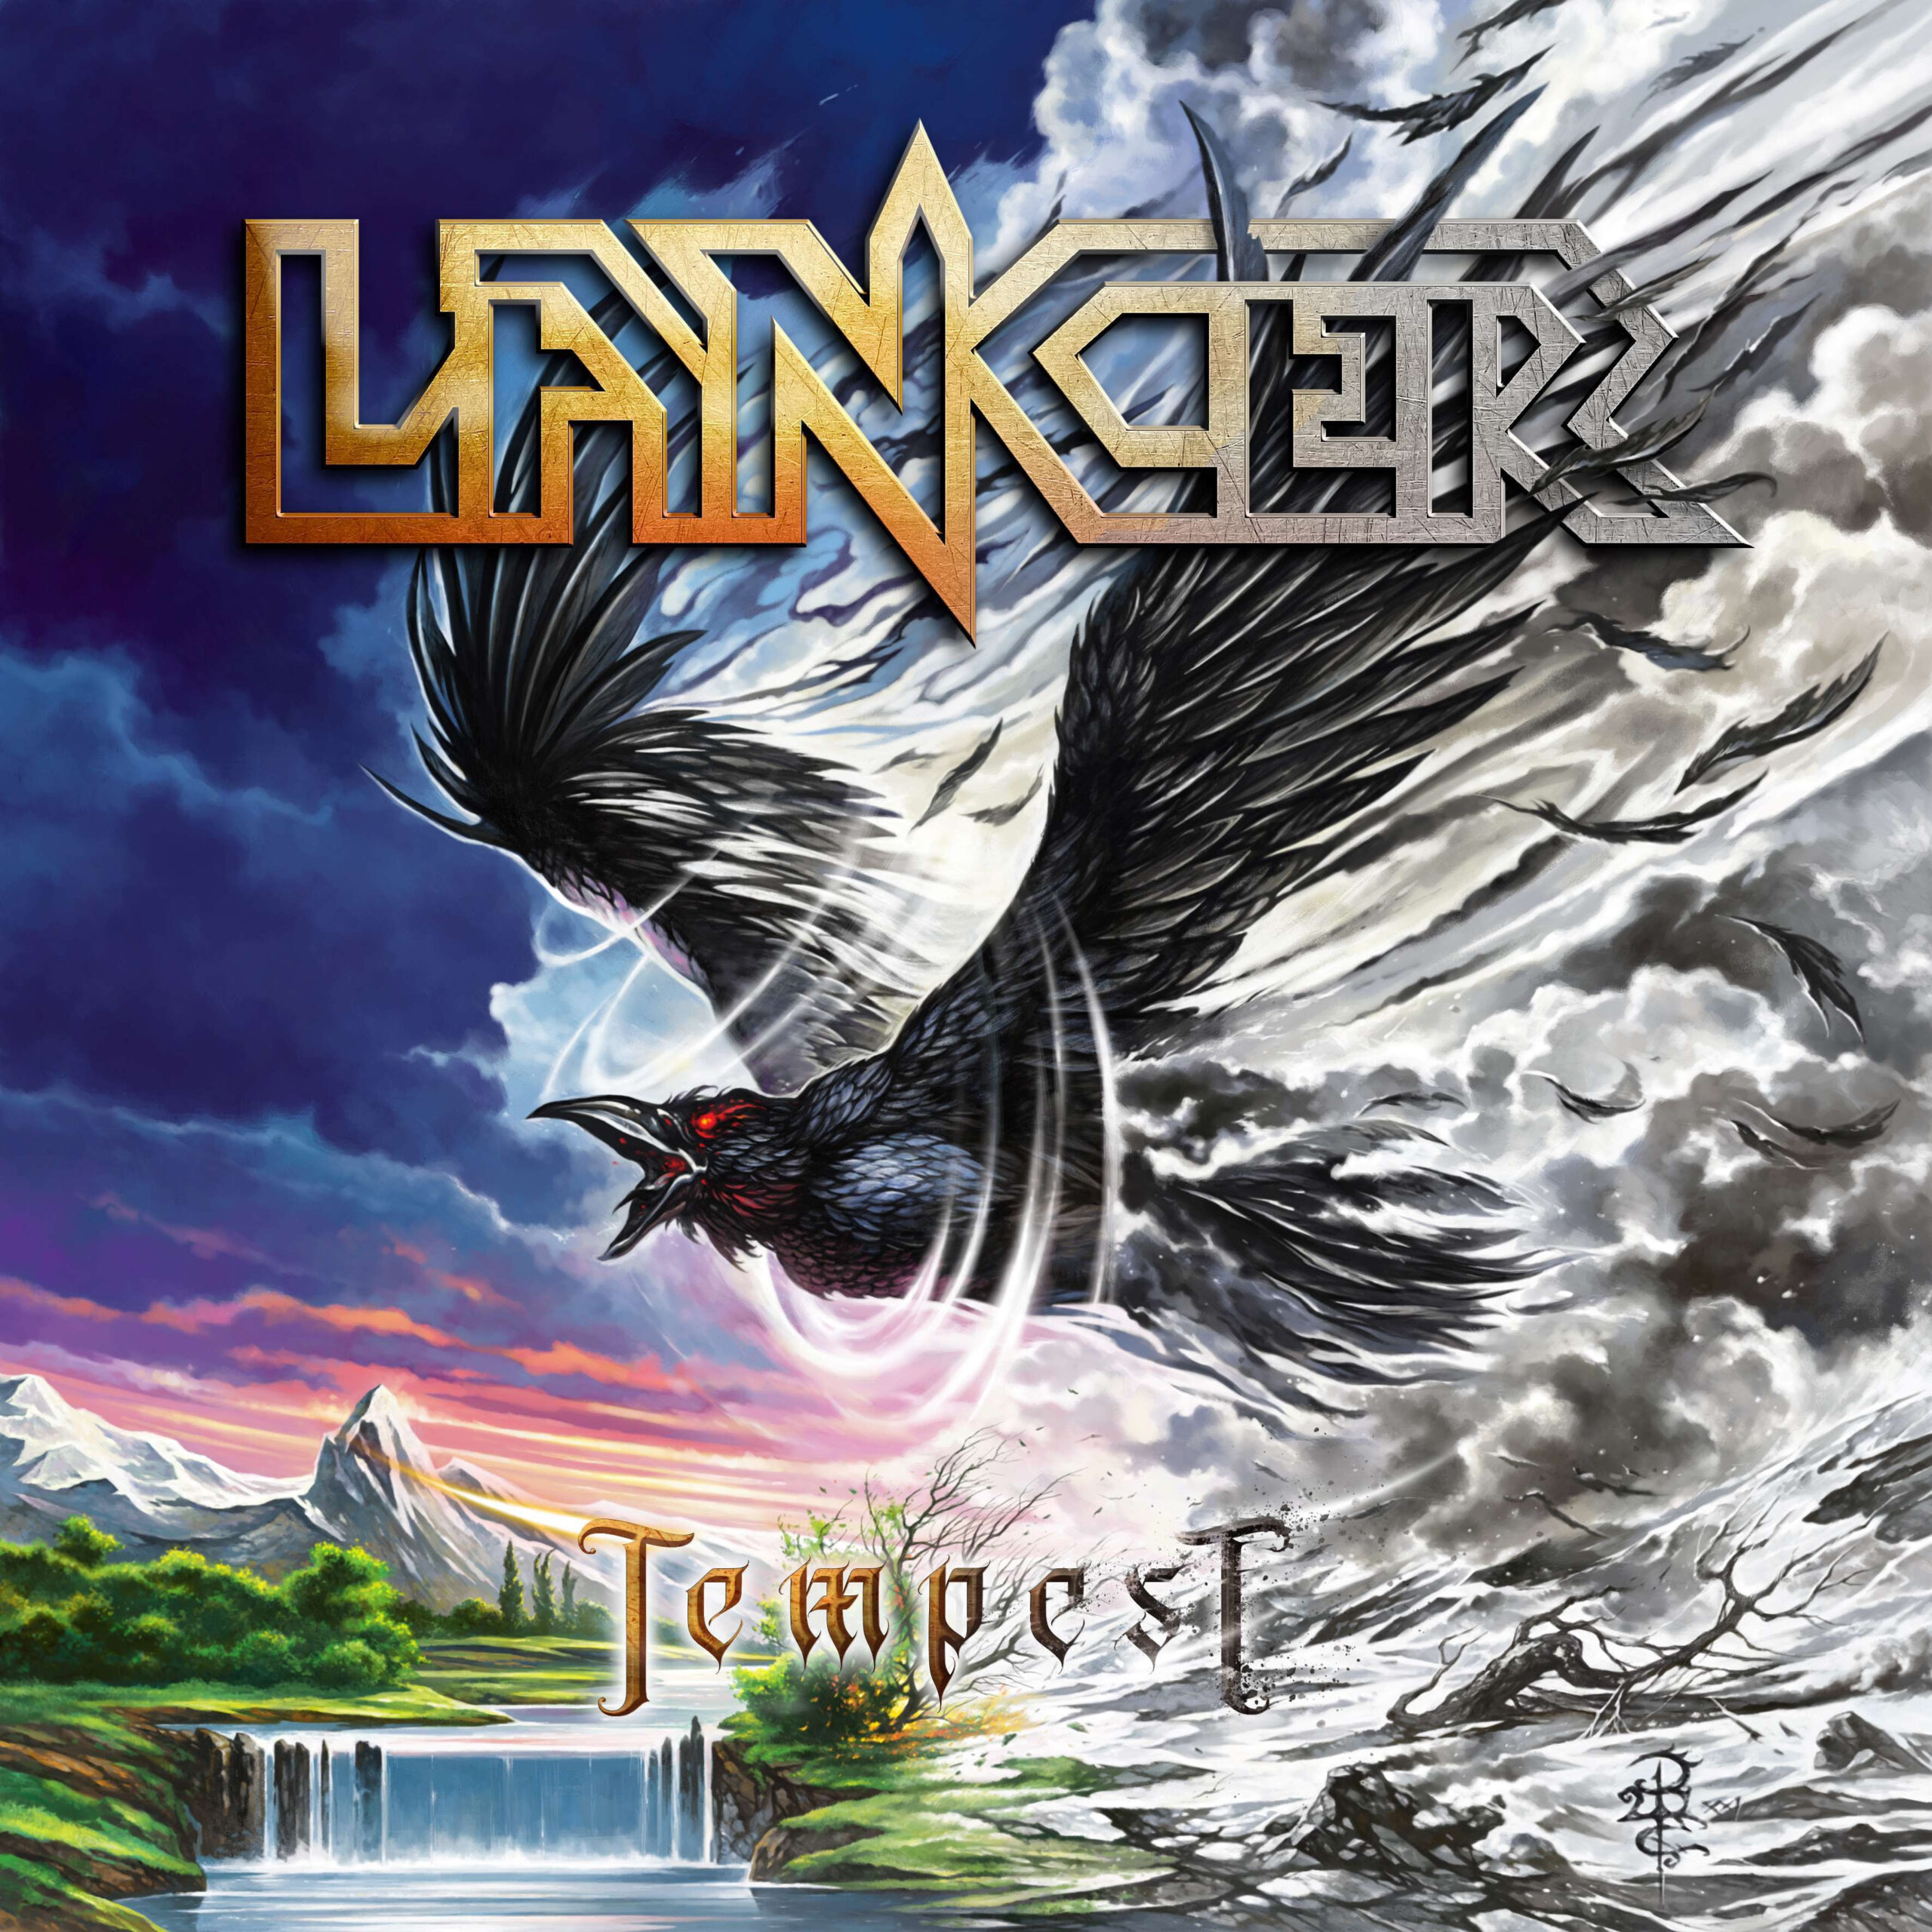 LANCER - "Tempest" heißt das neue Album und erscheint im August!